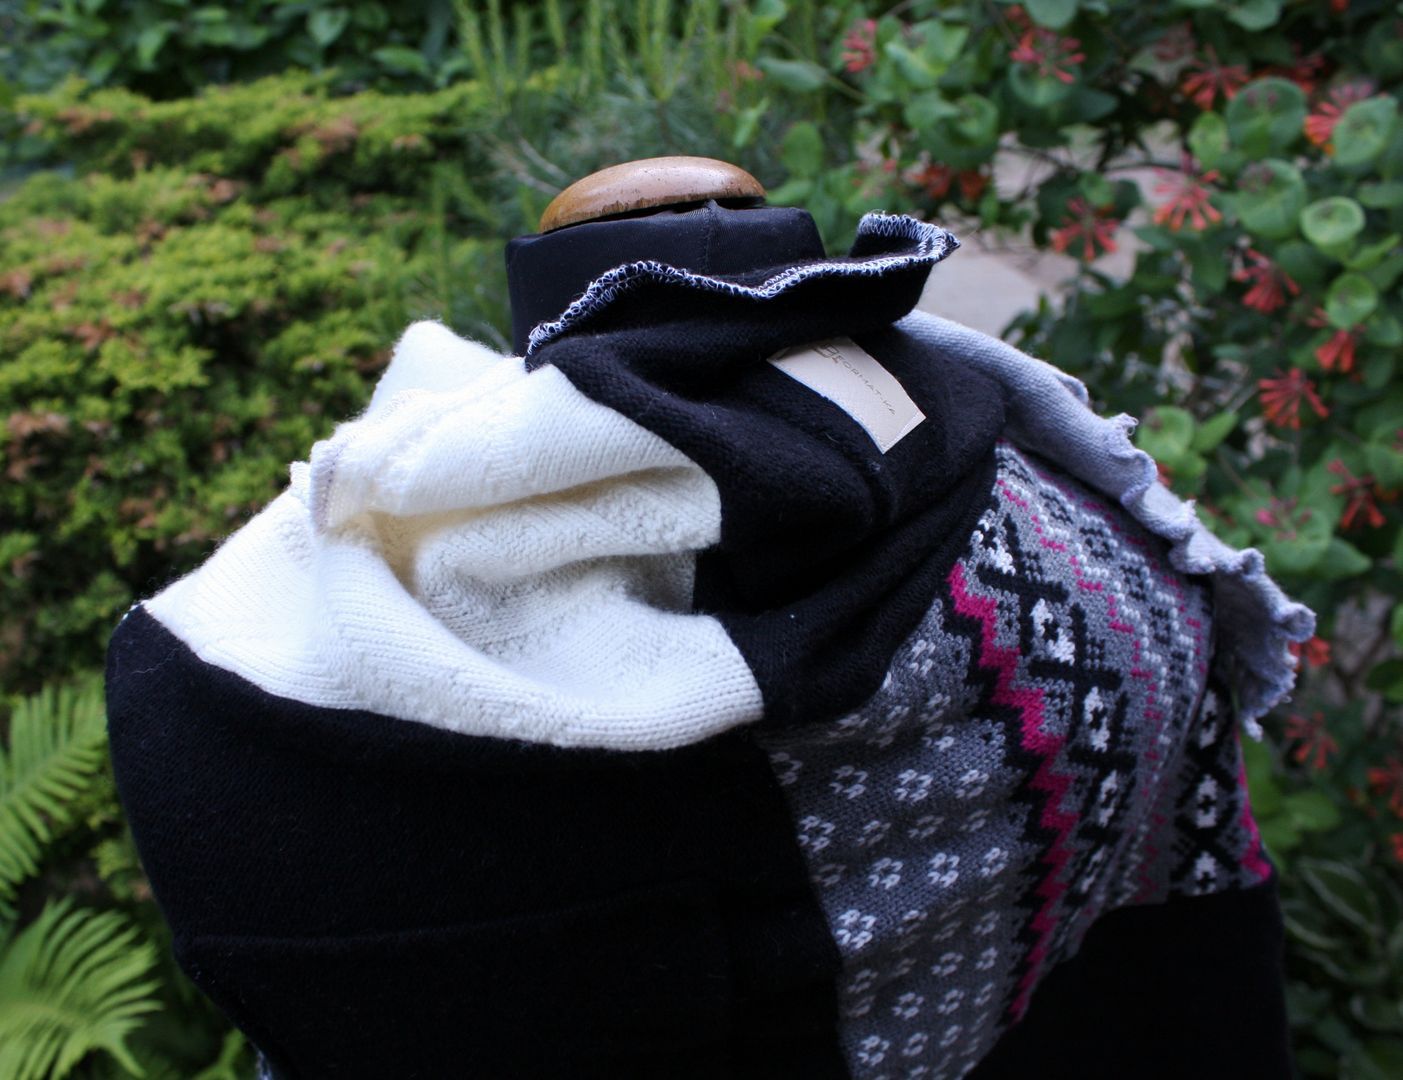 patchworkowy szal z recyklingowych swetrów: czarny, biały, motyw zebry.